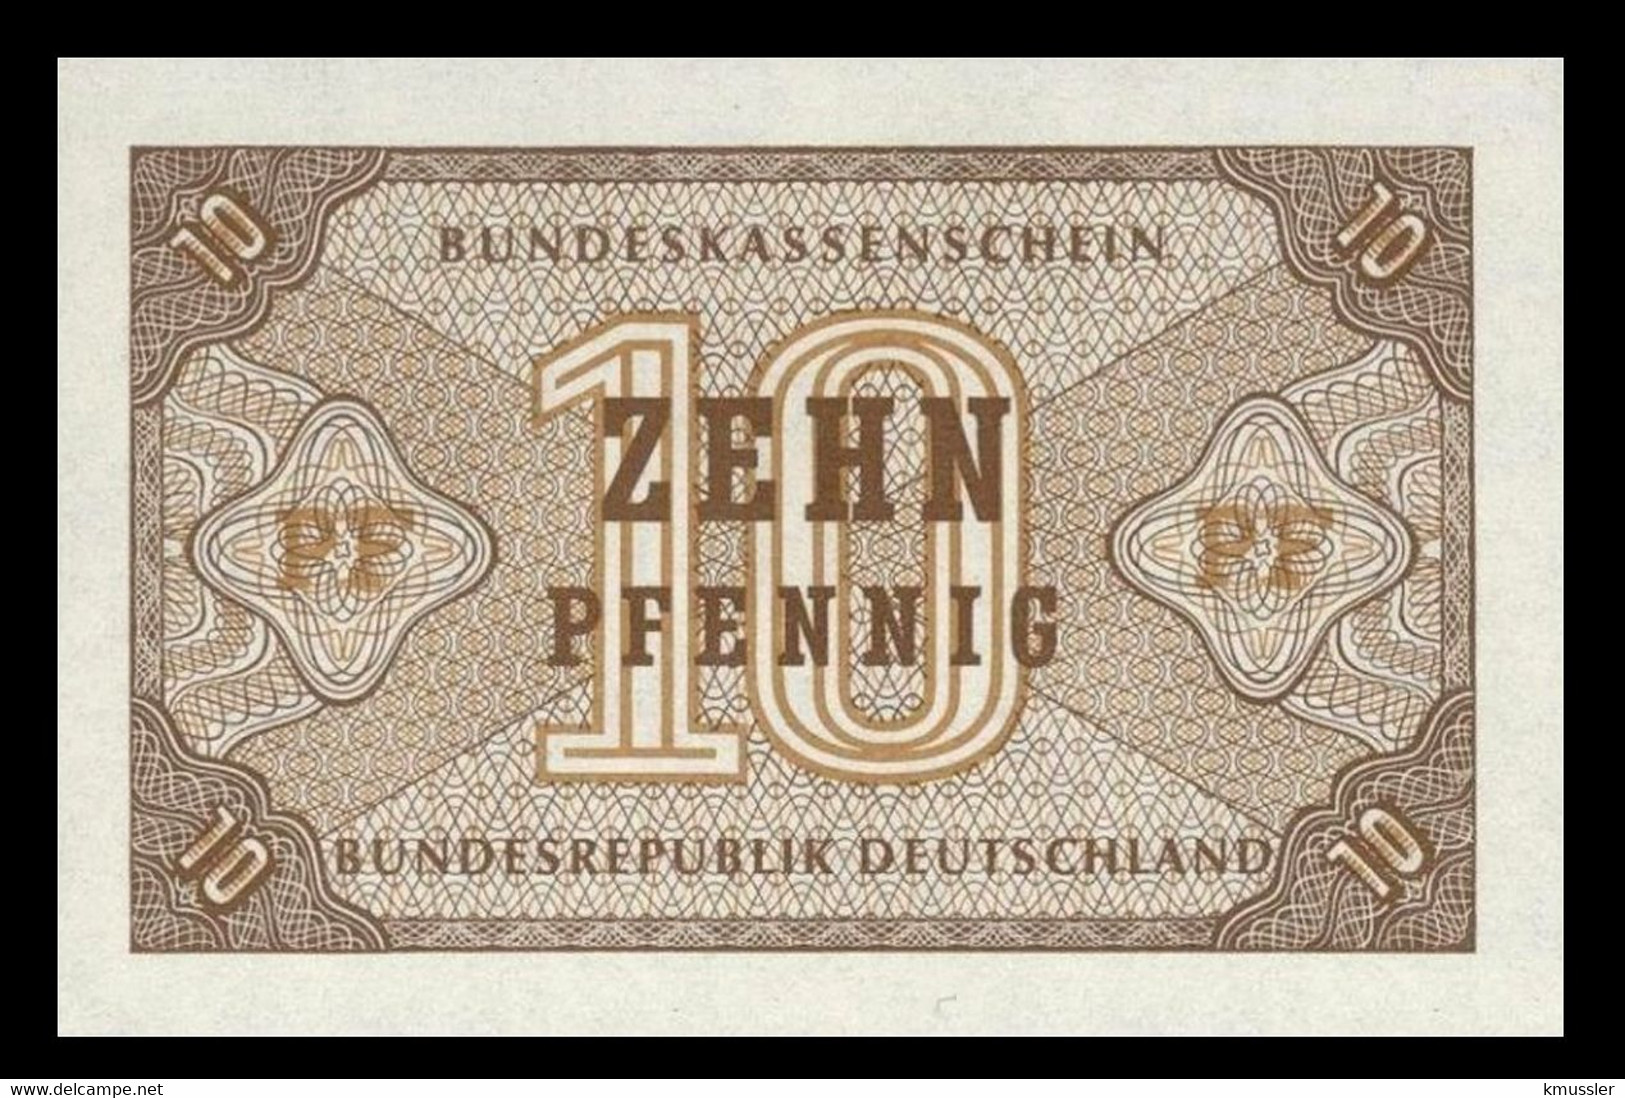 # # # Seltene Banknote Der BRD (Germany) 10 Pfennig 1949 UNC # # # - 10 Pfennig